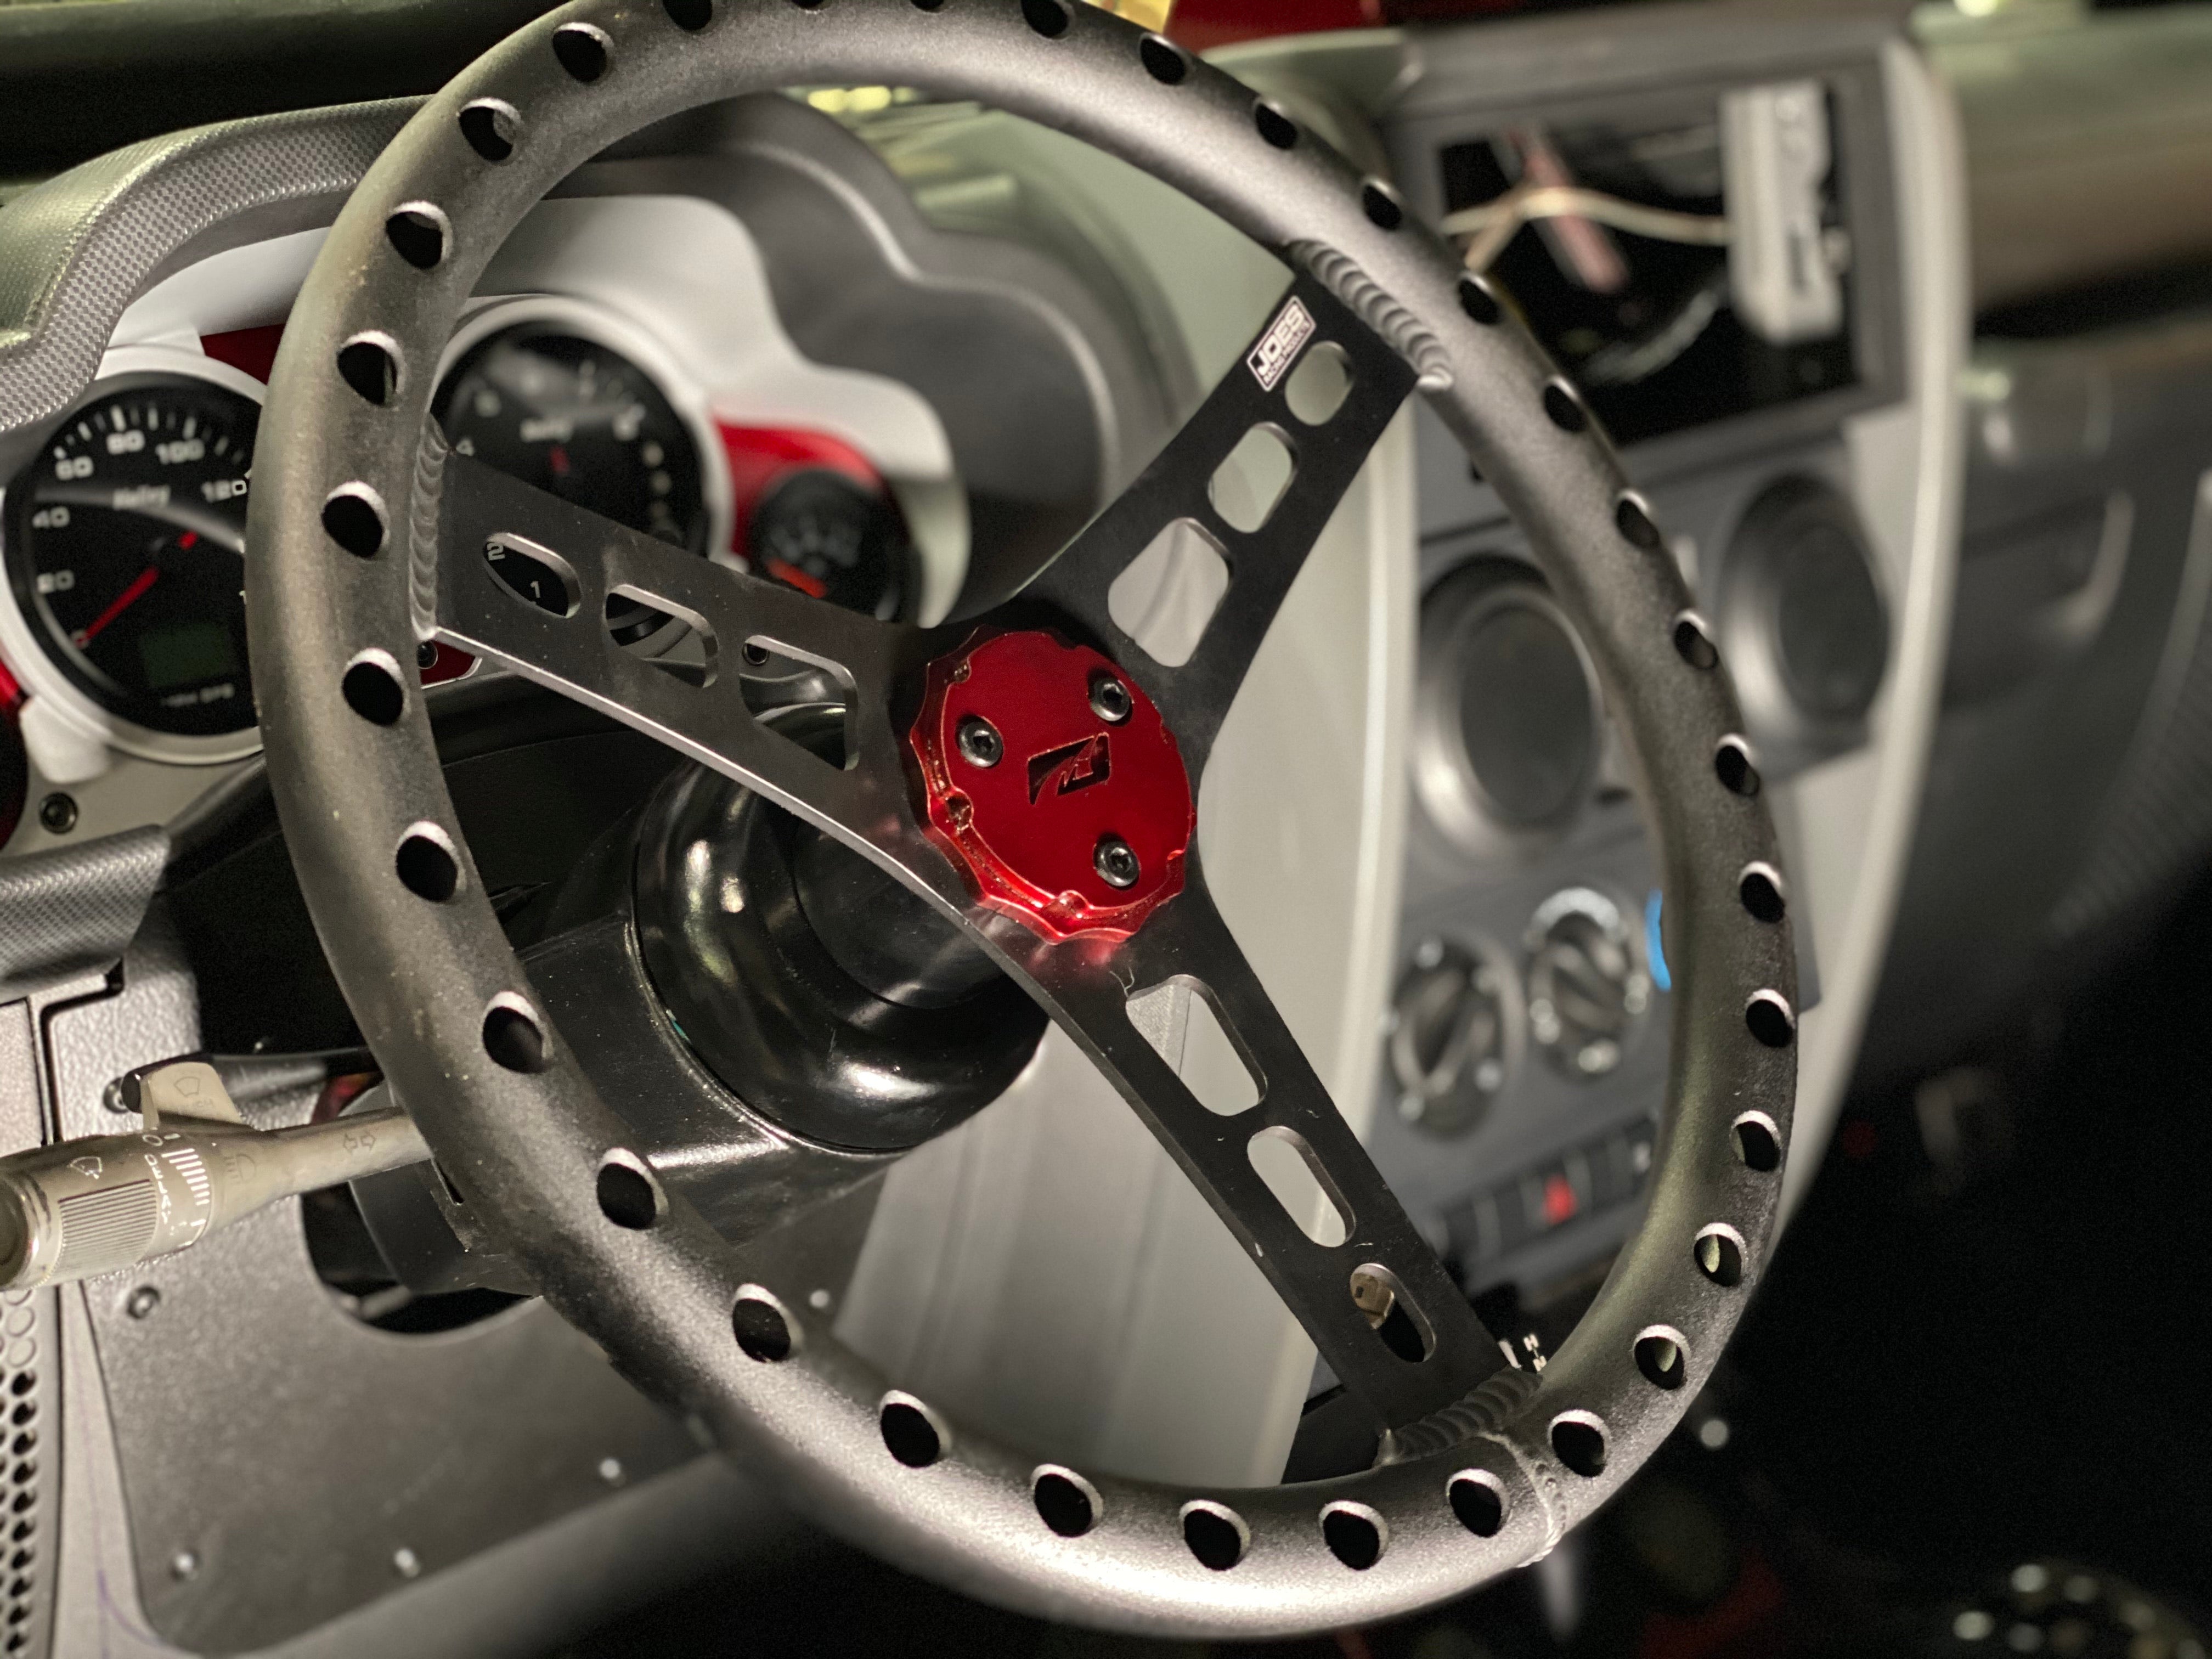 Steering Wheel Center Cap - Motobilt